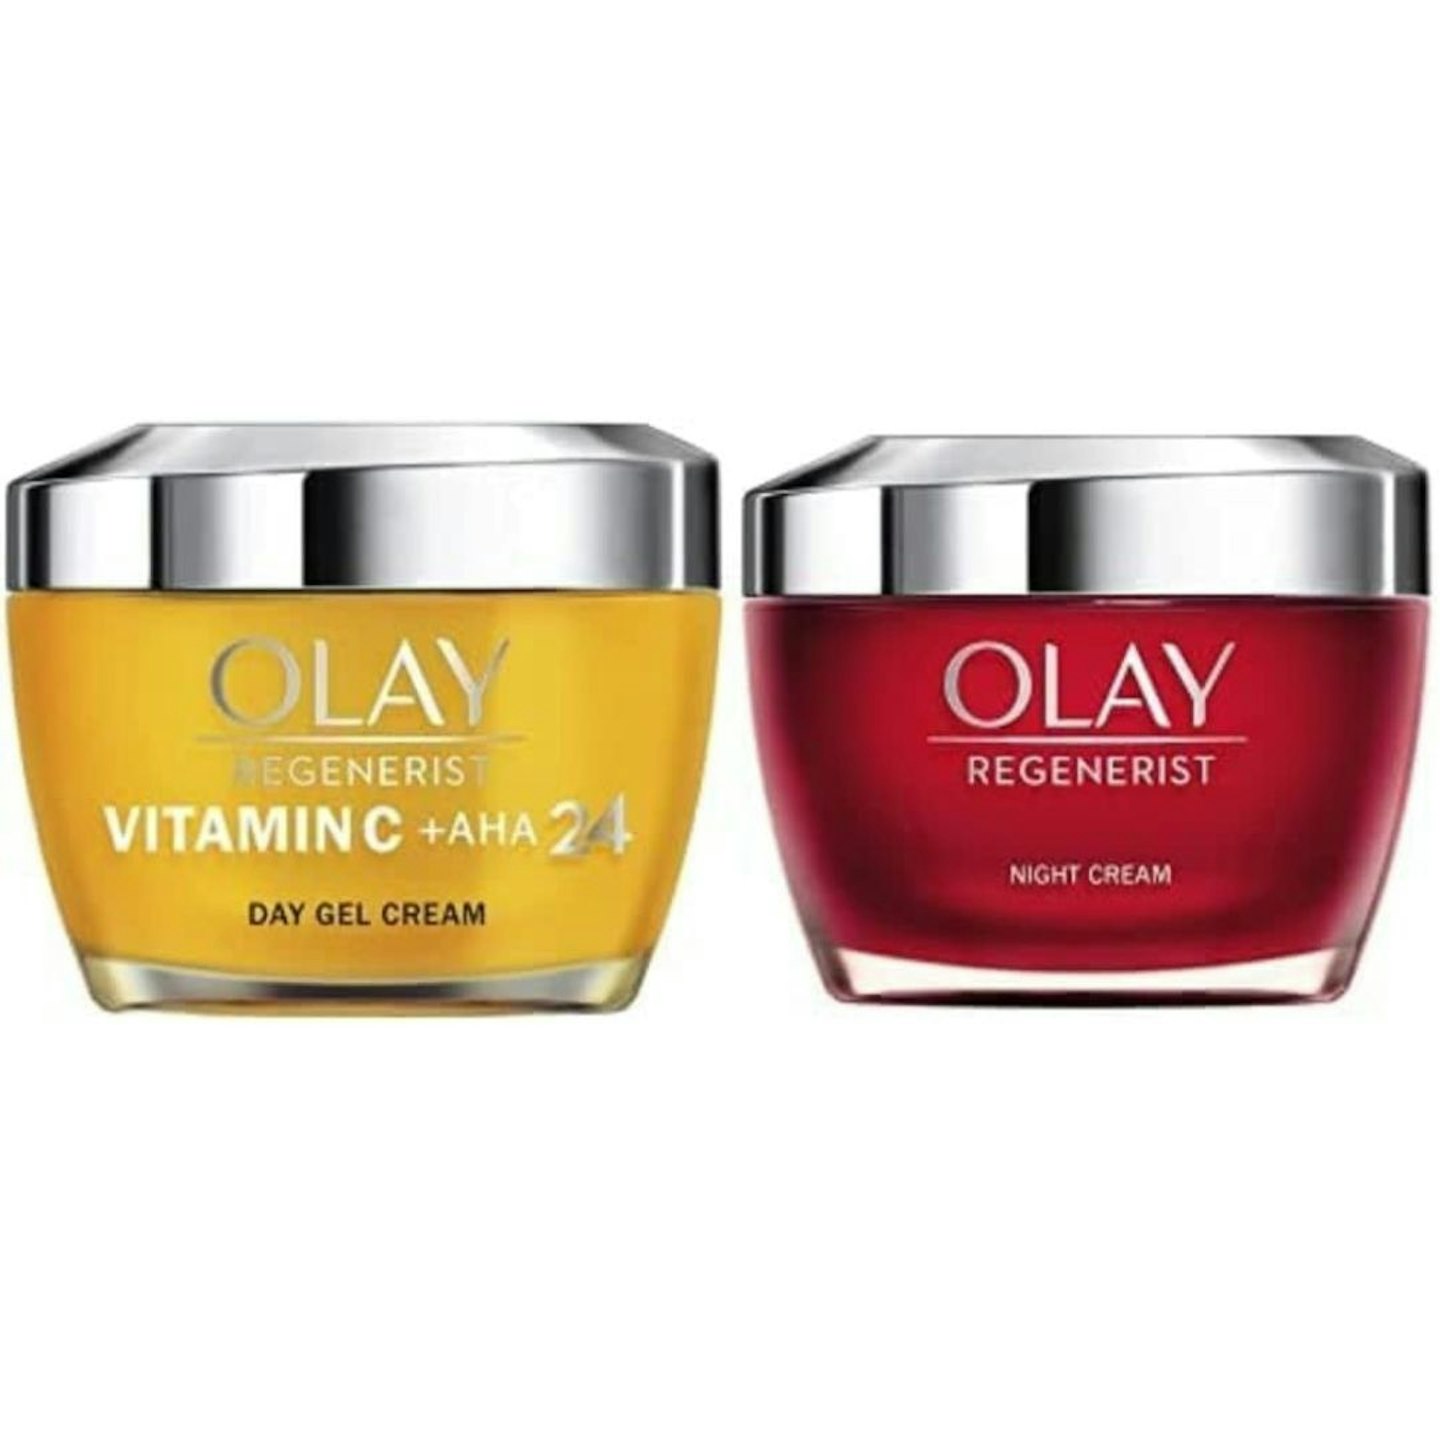 Olay Vitamin C Face Cream + Regenerist Night Cream